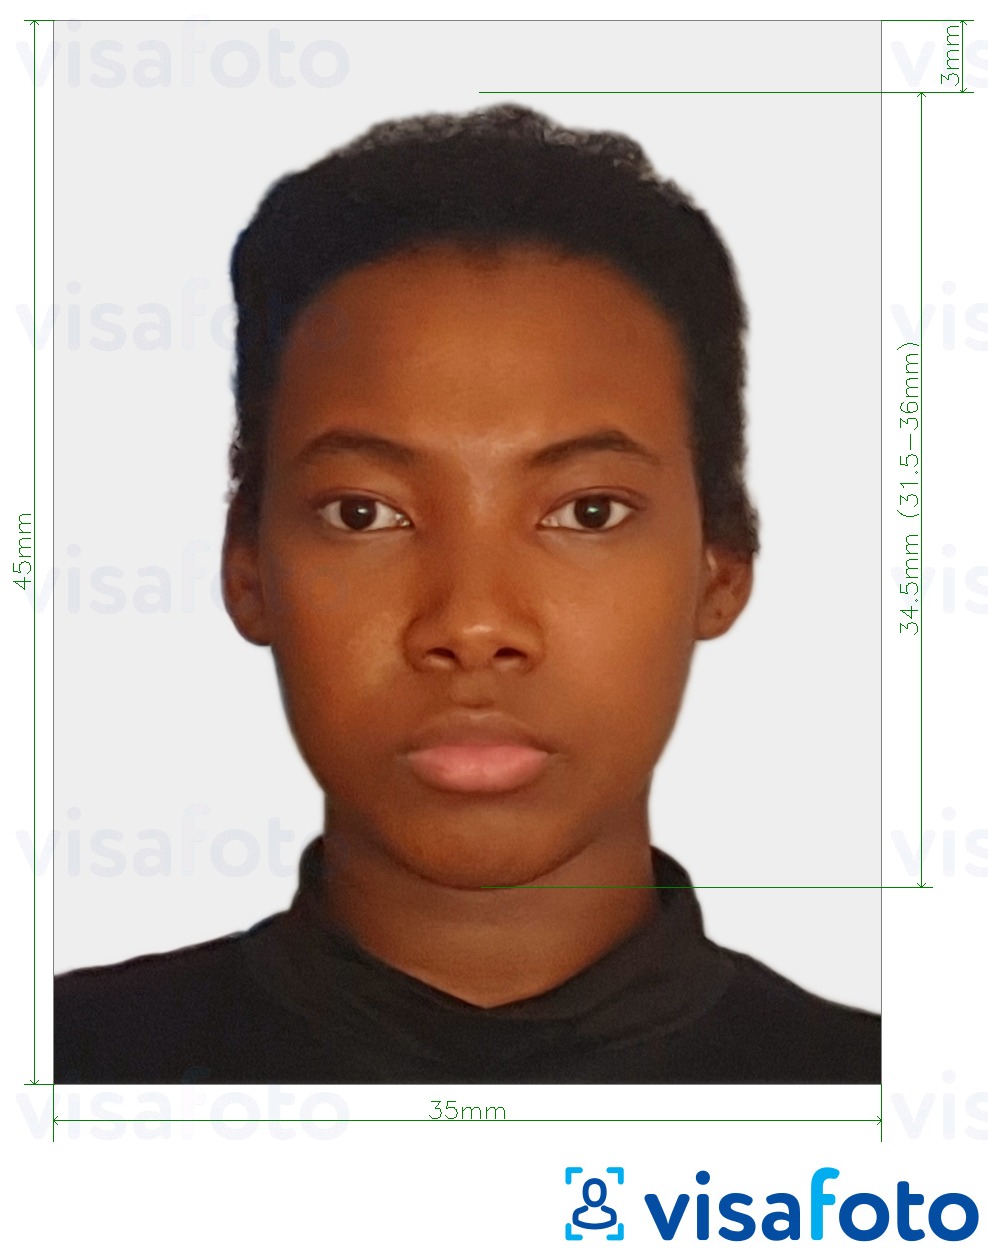 نمونه ی یک عکس برای شهروندی پاپوآ گینه نو 35x45mm (3.5x4.5 سانتی متر) با مشخصات دقیق